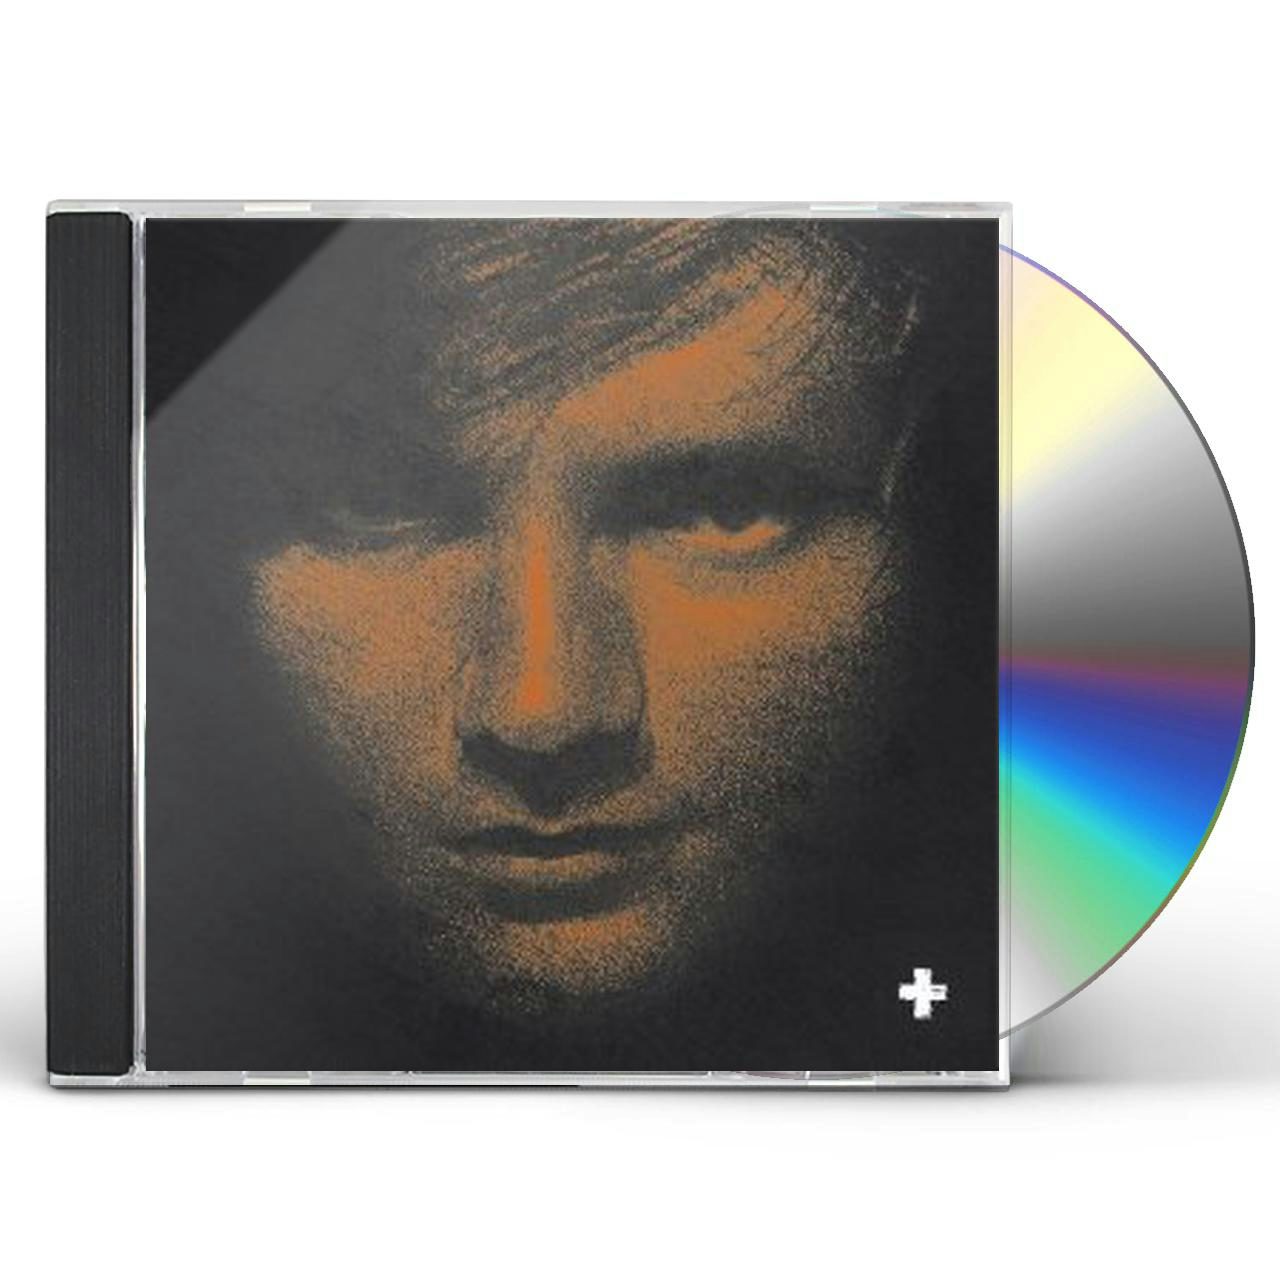 ed sheeran plus deluxe album download zip